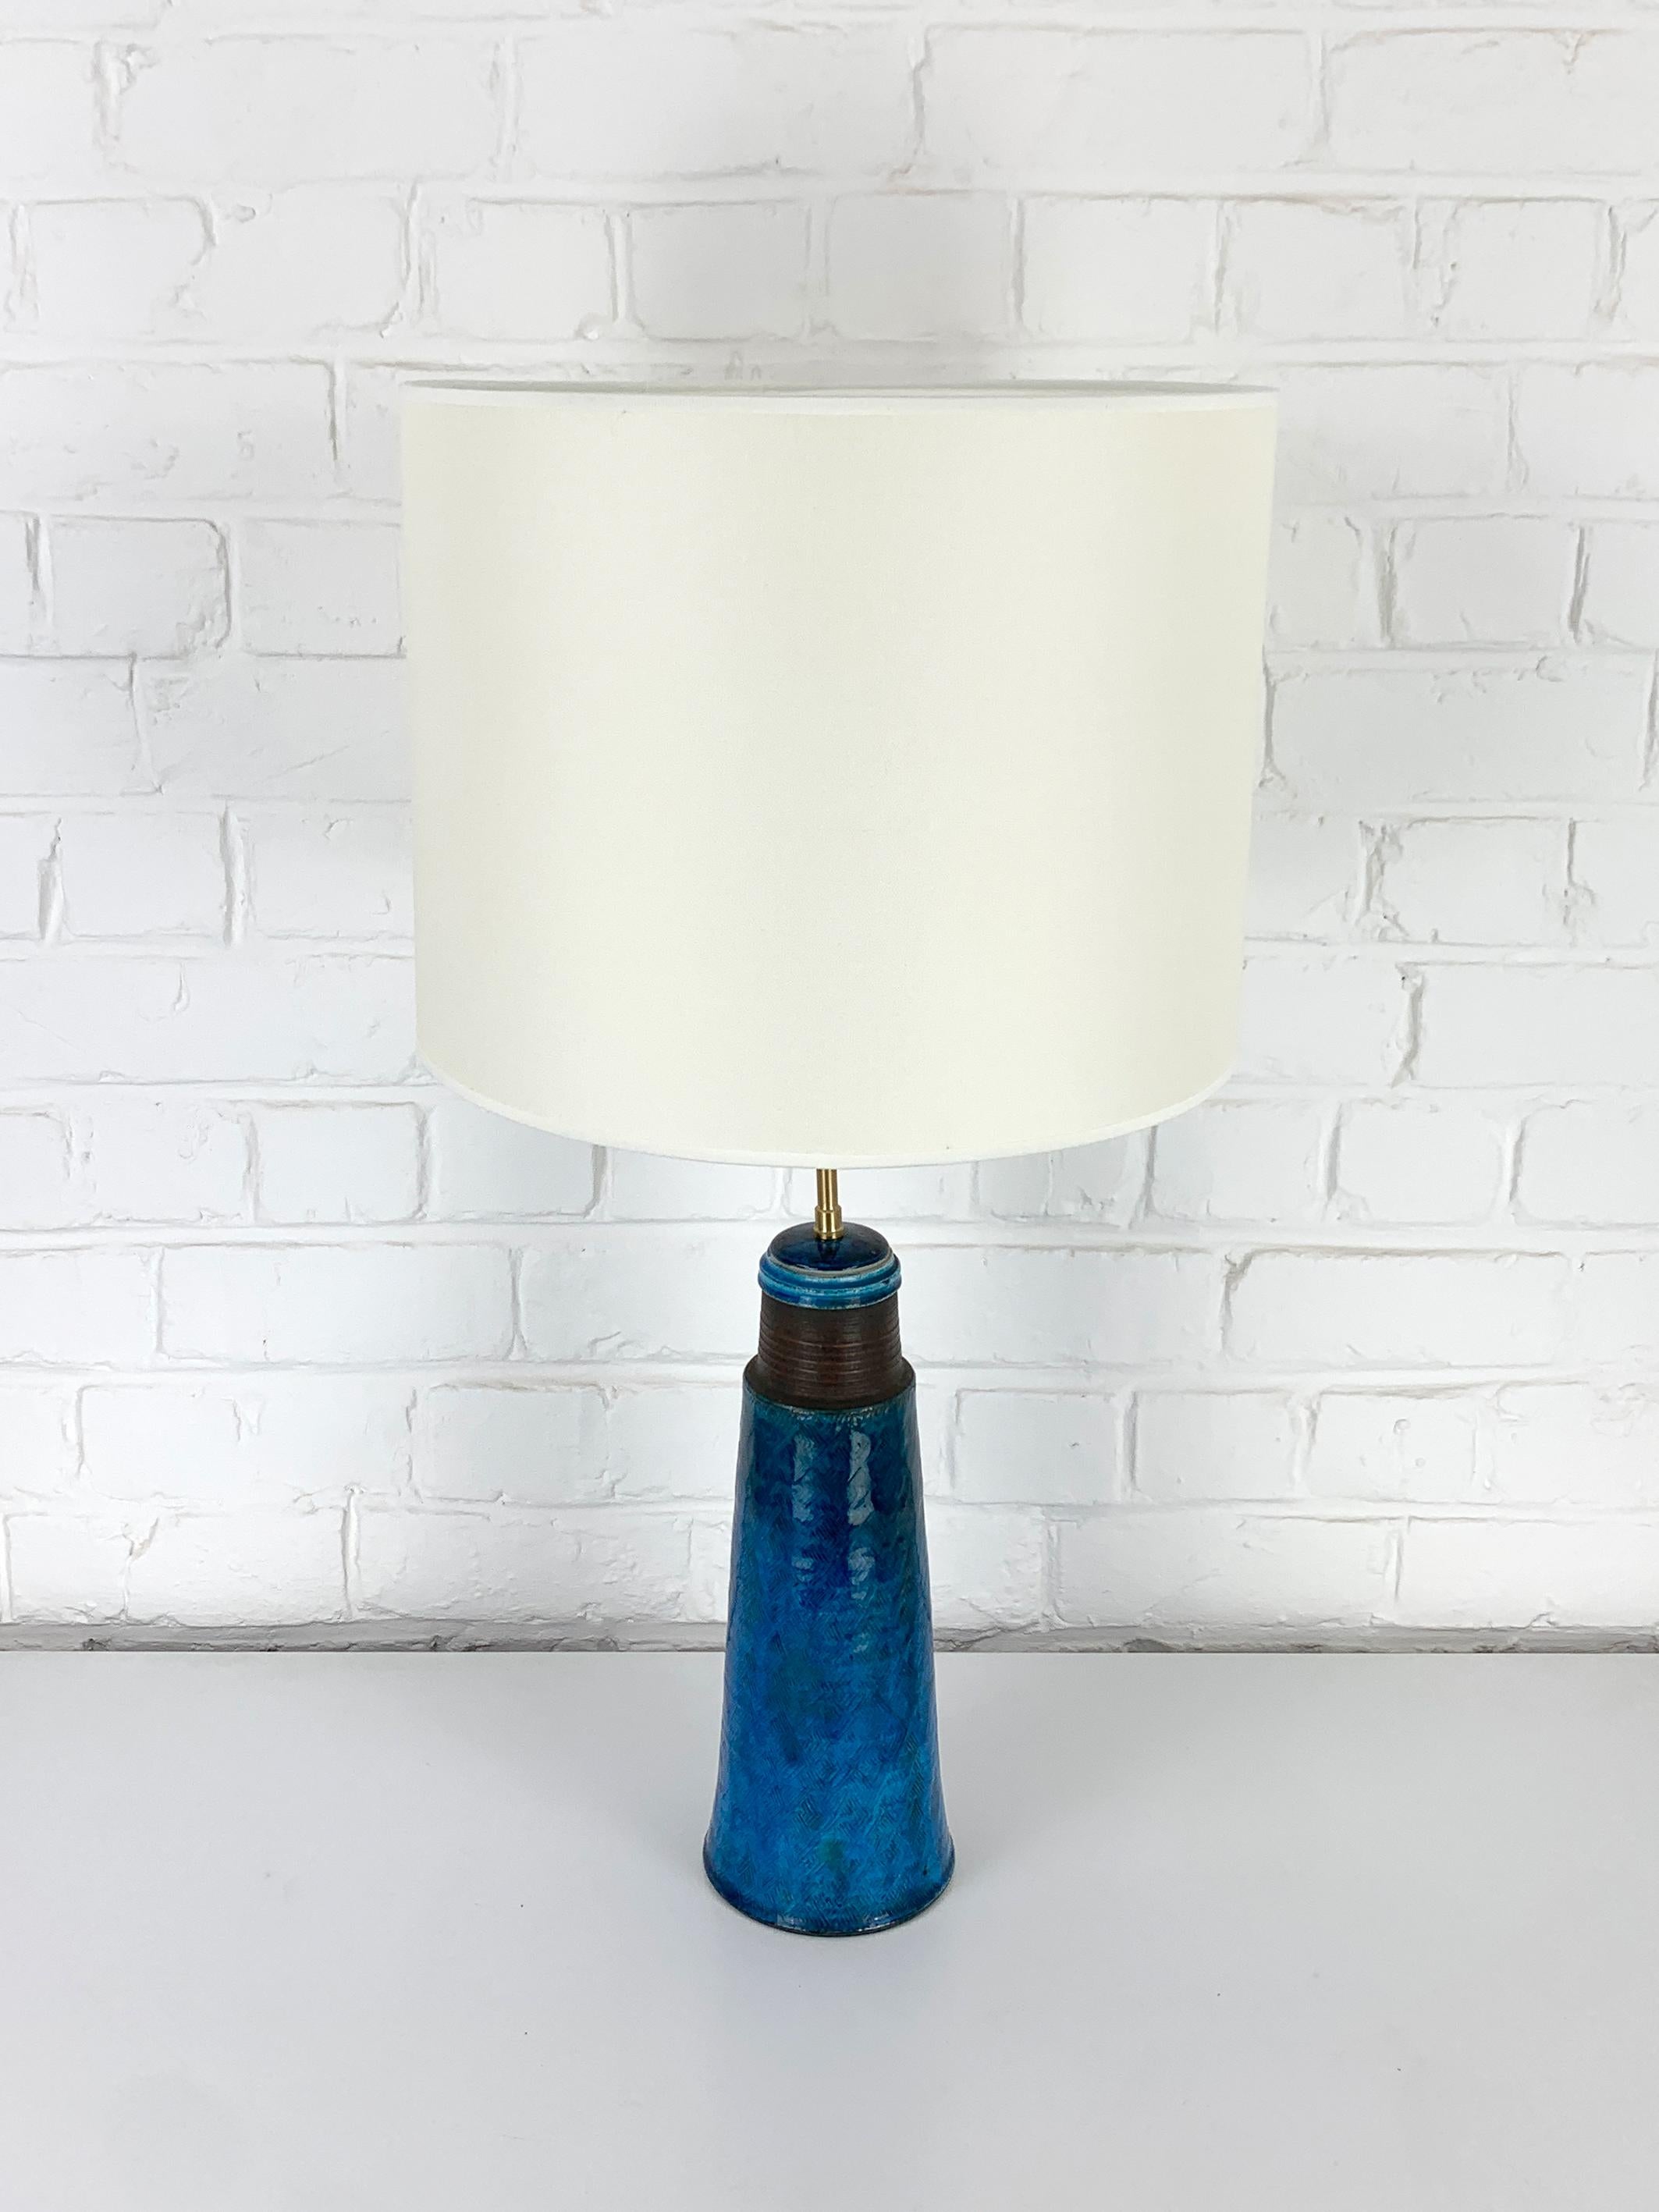 Tall Scandinavian ceramic table lamp, Nils Kähler for HAK, Denmark 2